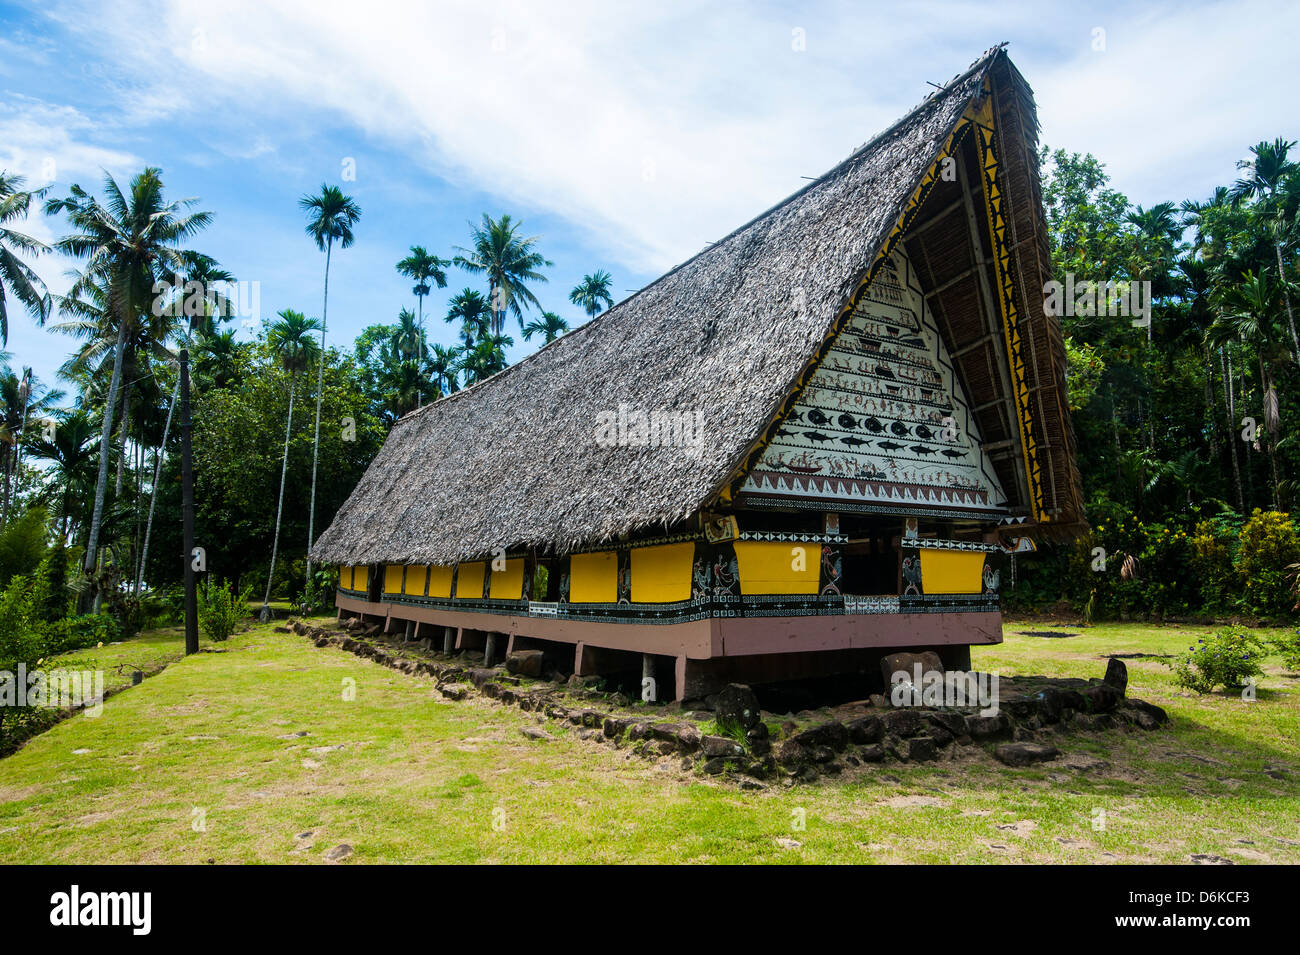 Bai plus ancien de Palau, une maison pour les chefs de village, île de Babeldoab, Palau, le centre du Pacifique, Pacifique Banque D'Images